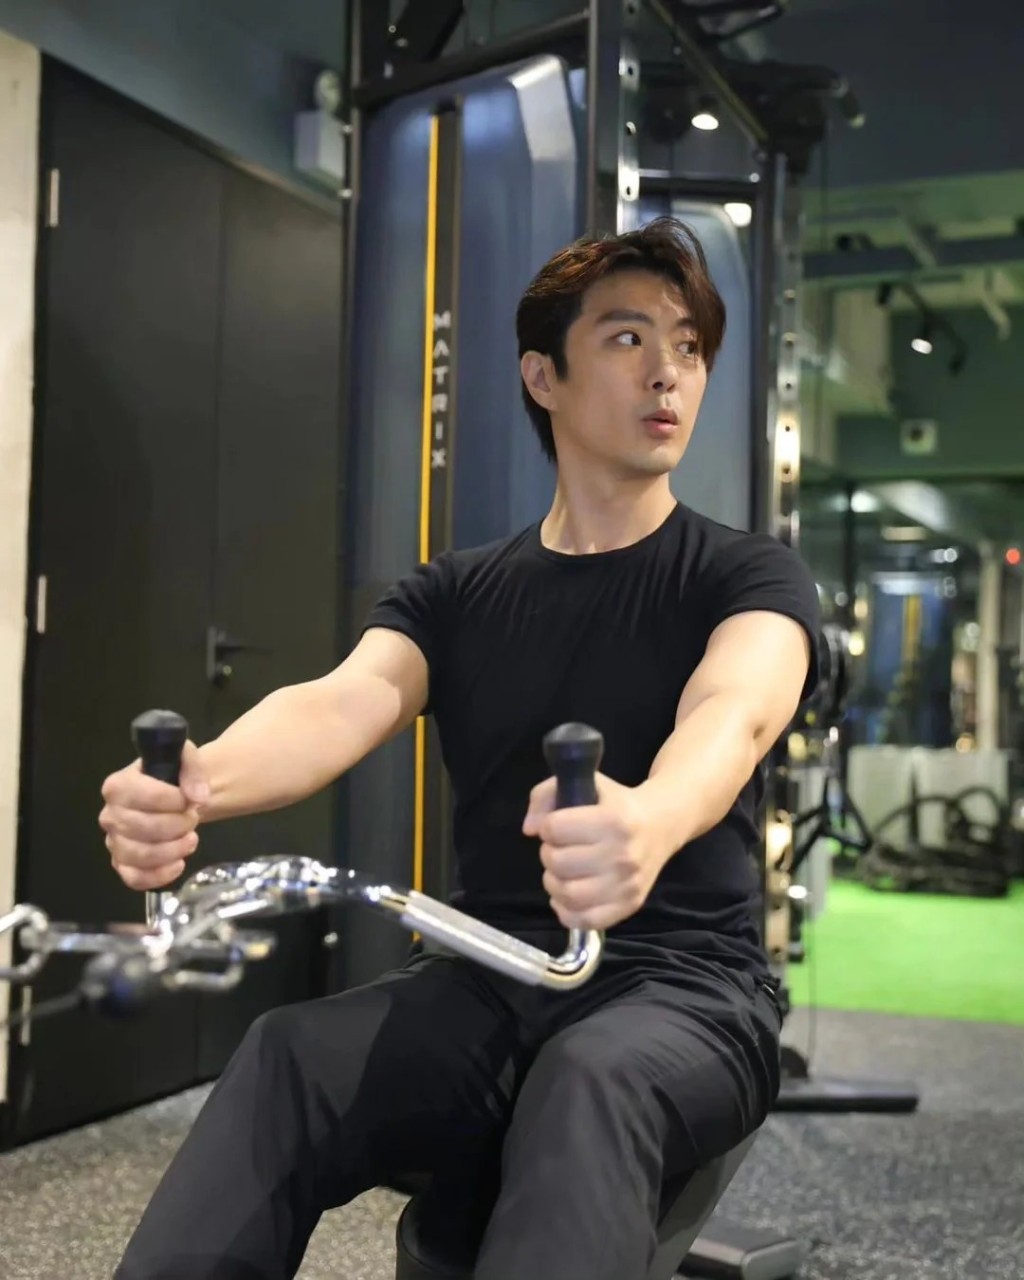 張景淳經常去自己投資的健身室做gym，因而出現在屯門亦是很合理。